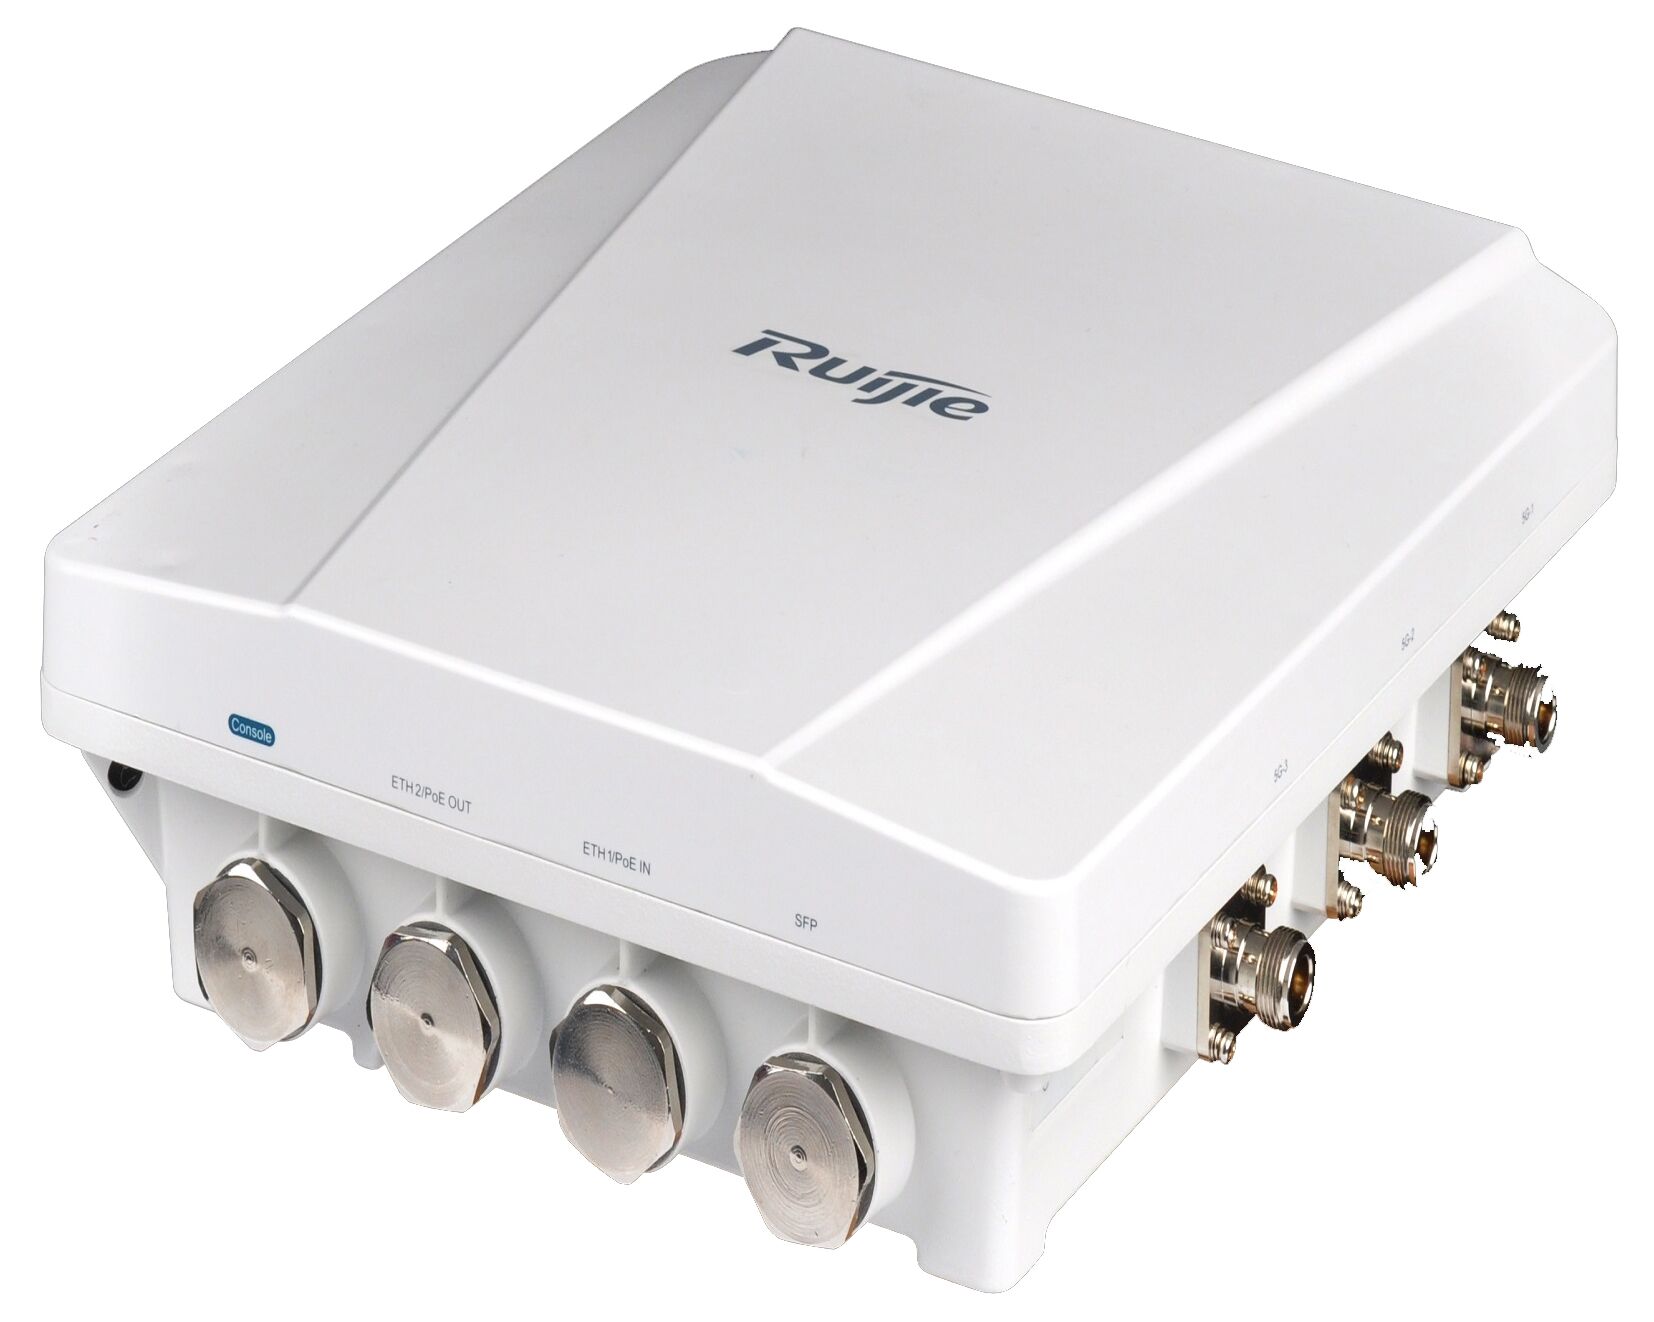 Точка доступа Ruijie Ruijie RG-AP630(IODA) /2.4 GHz,5 GHz a,ac,b,g,n/Поддержка PoE